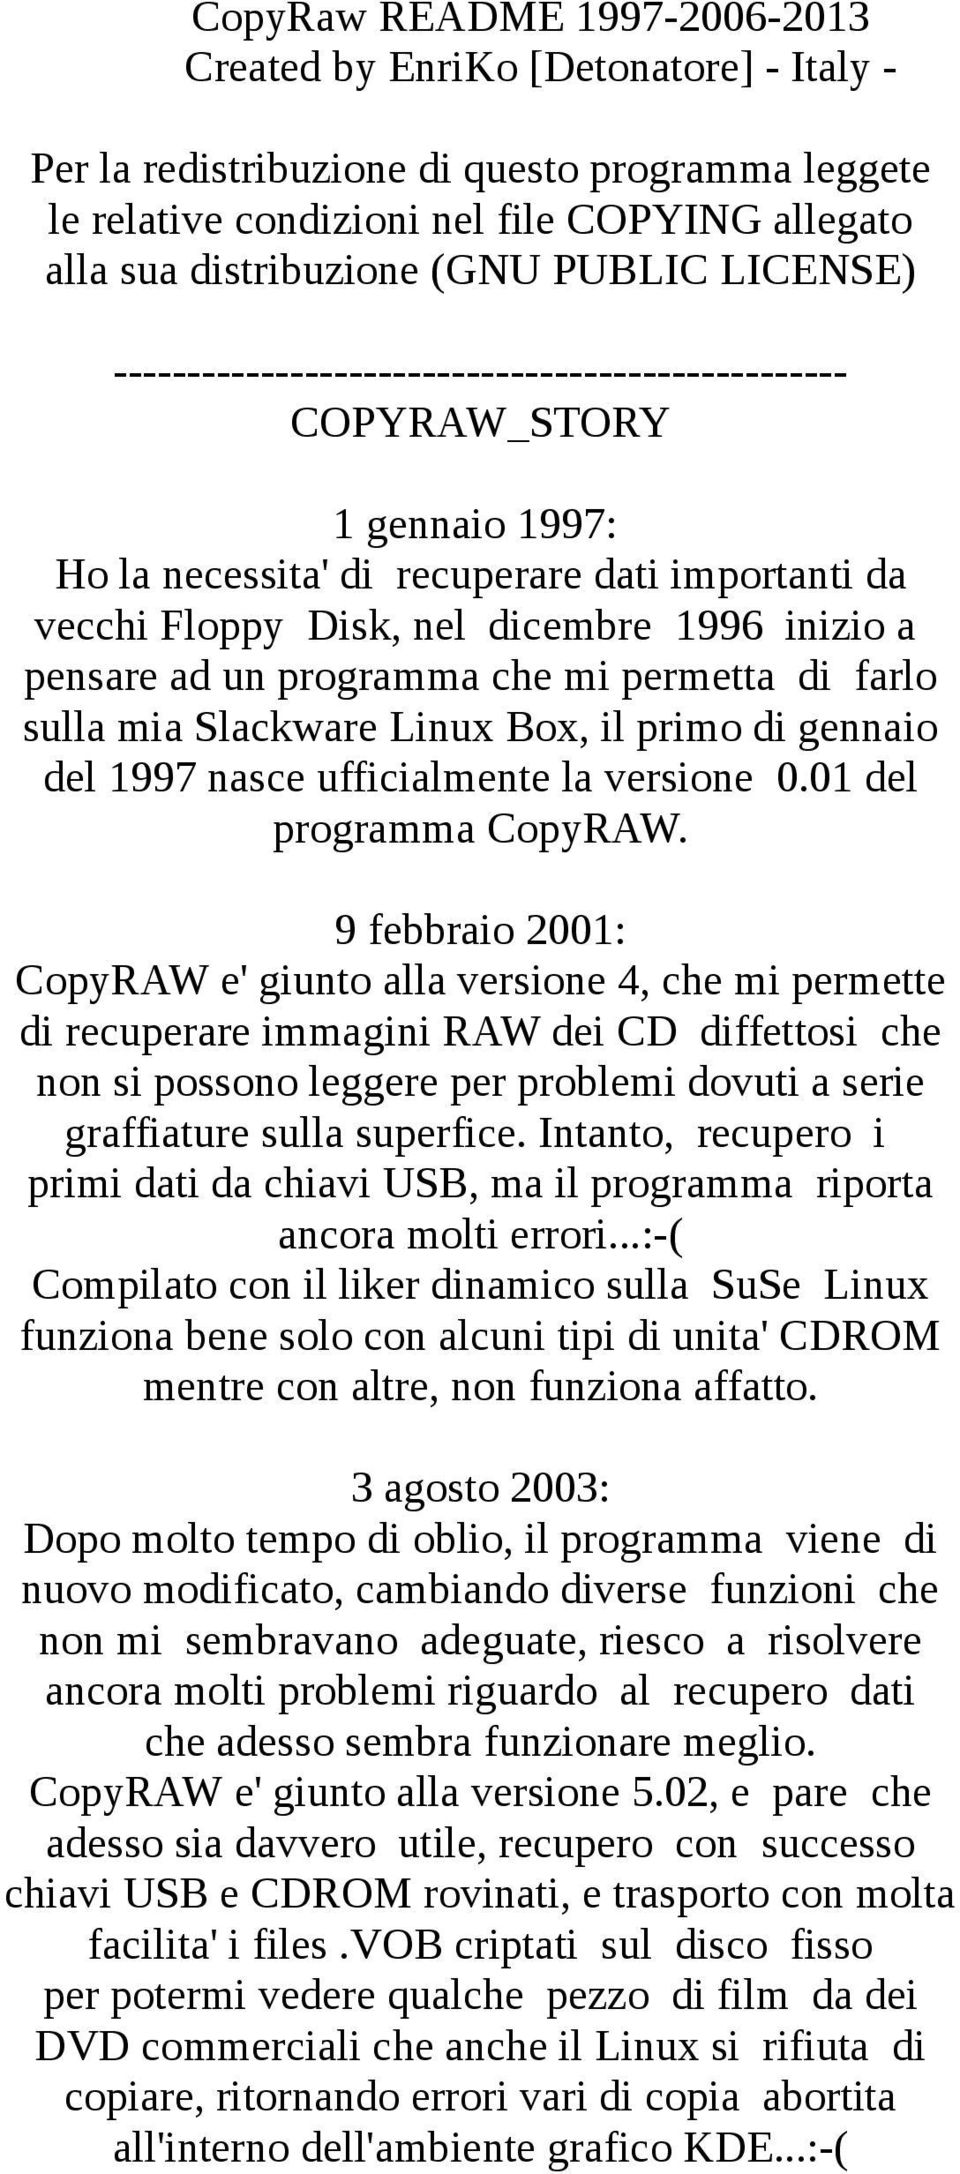 pensare ad un programma che mi permetta di farlo sulla mia Slackware Linux Box, il primo di gennaio del 1997 nasce ufficialmente la versione 0.01 del programma CopyRAW.